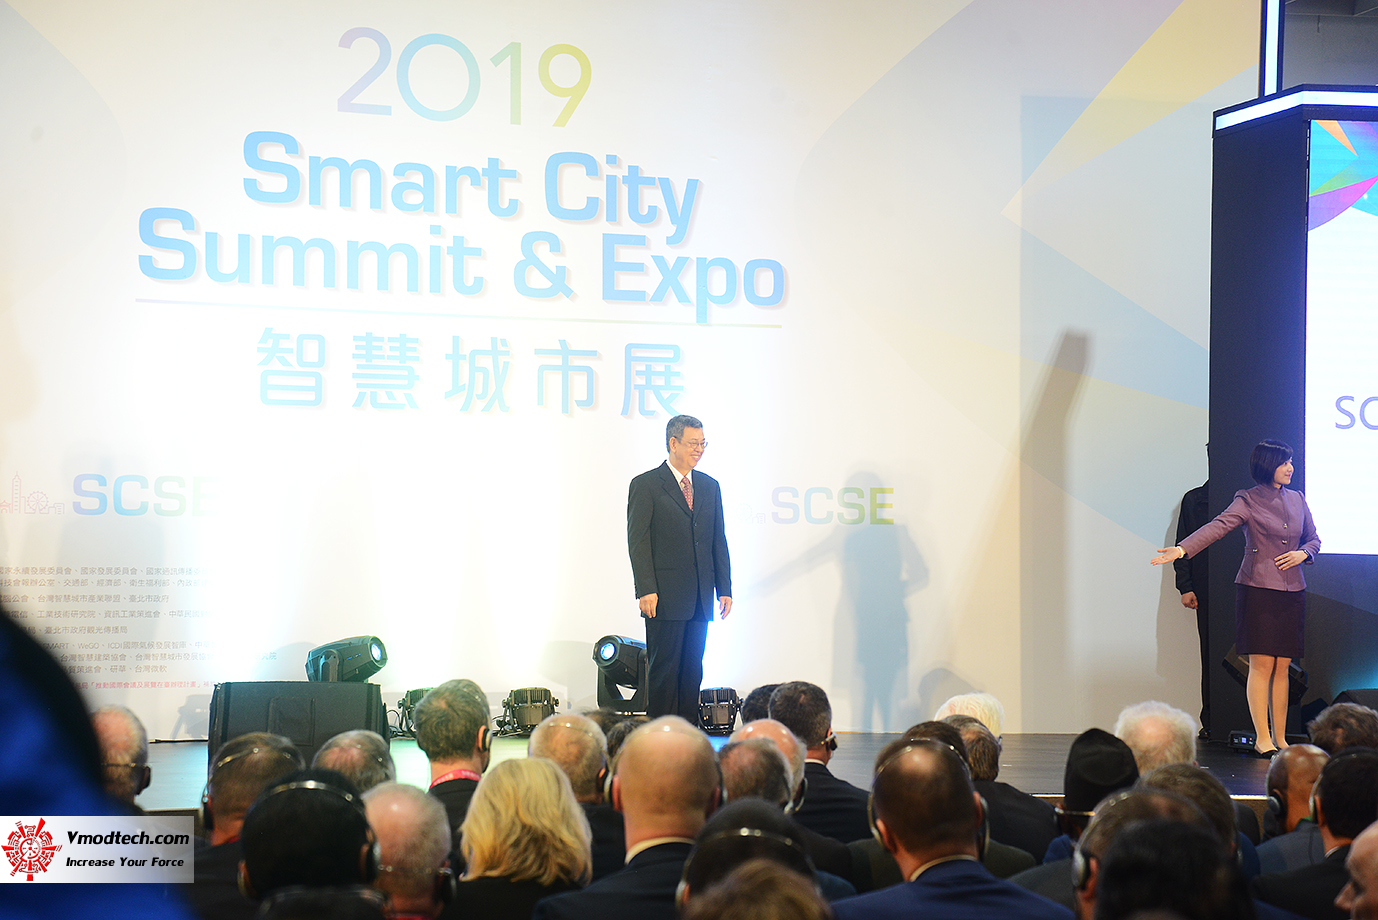 dsc 8323 เยี่ยมชมพิธีเปิด 2019 SMART CITY SUMMIT & EXPO ณ กรุงไทเป ประเทศไต้หวัน 